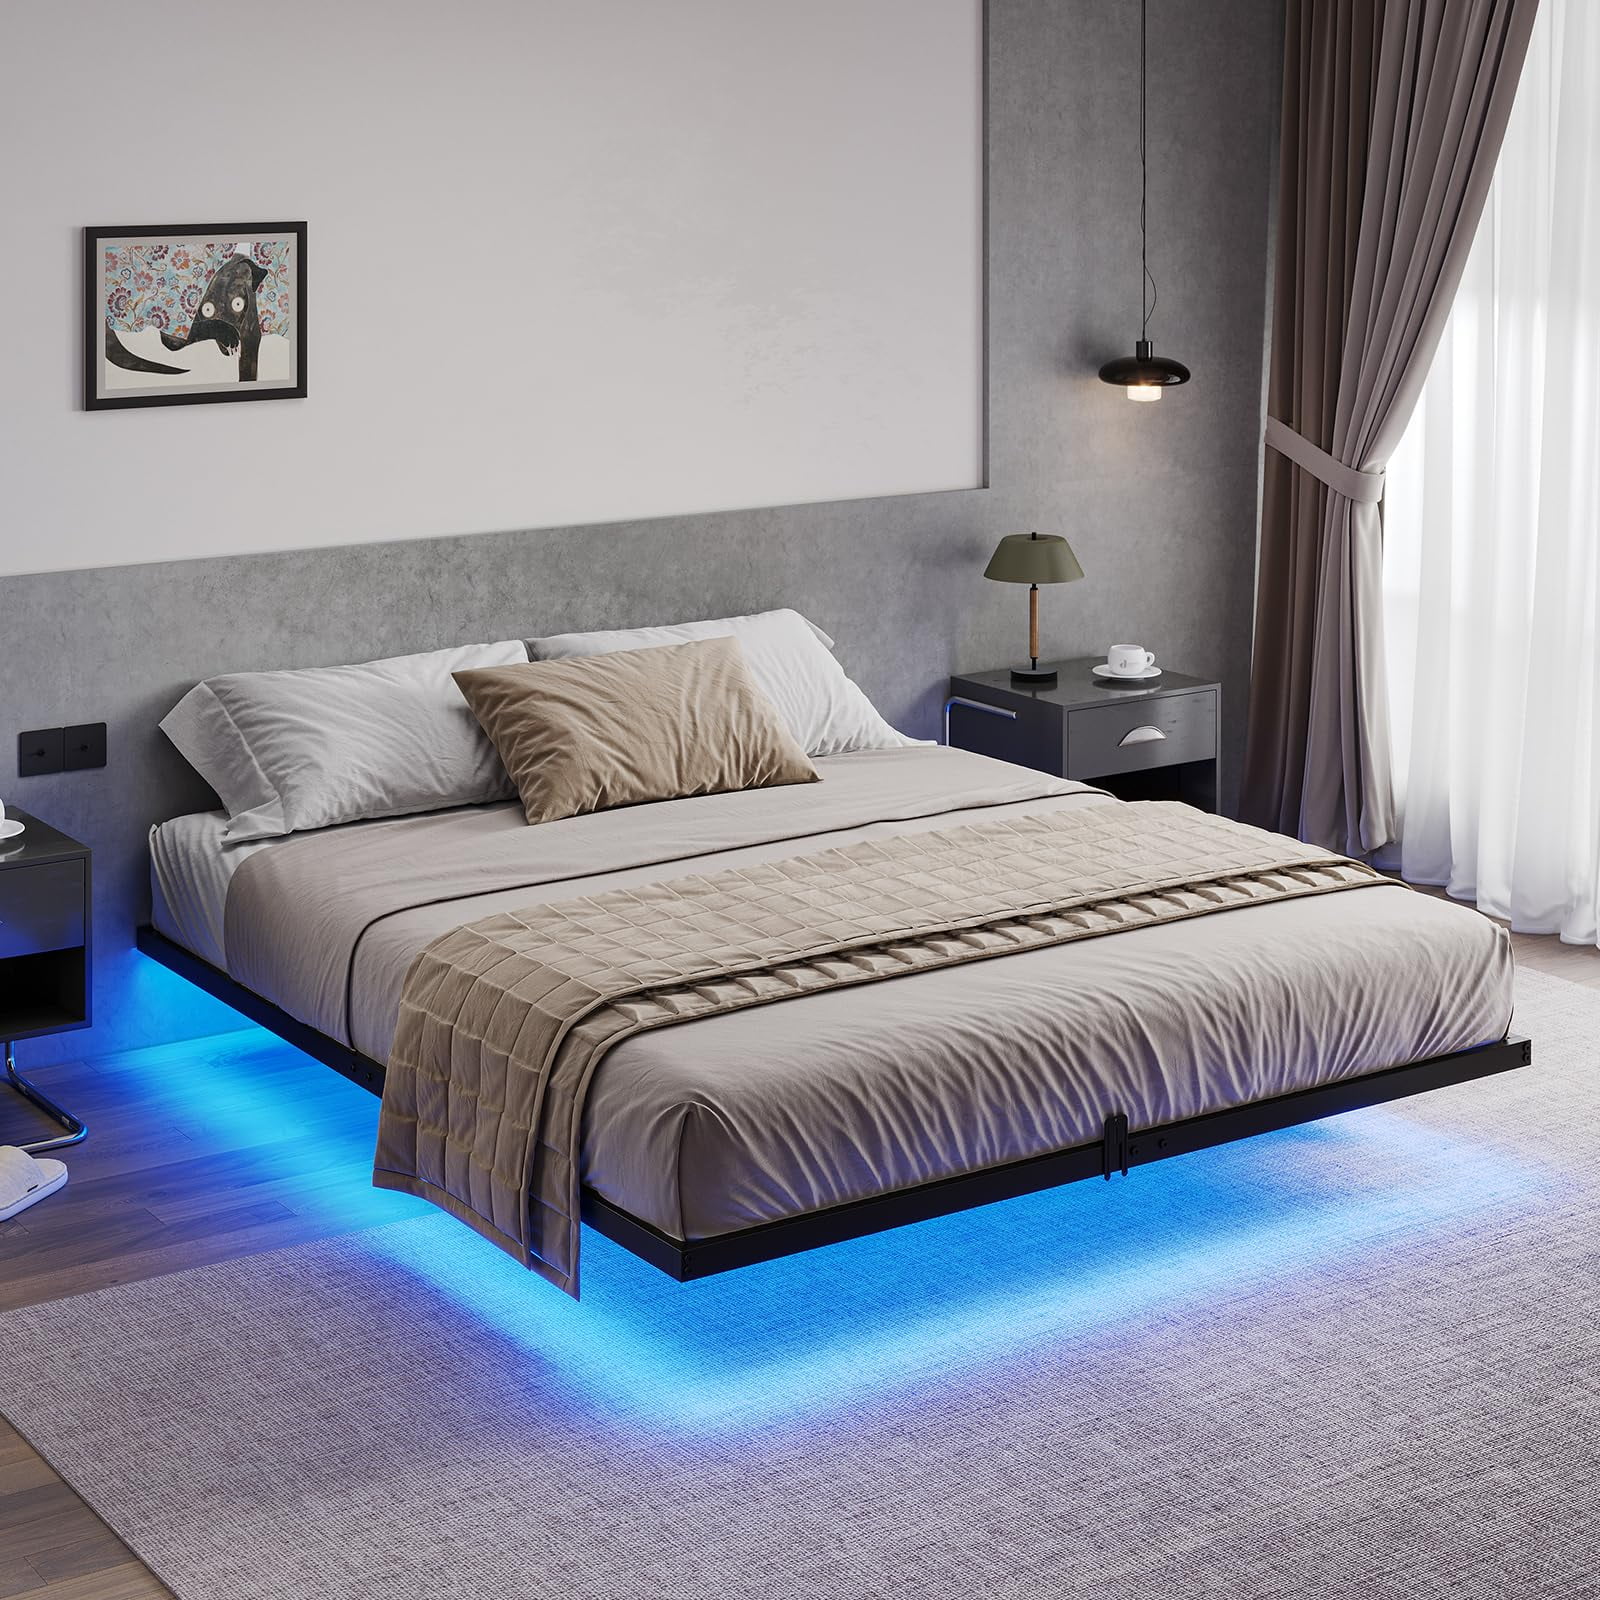 Led Lights Under A Bed